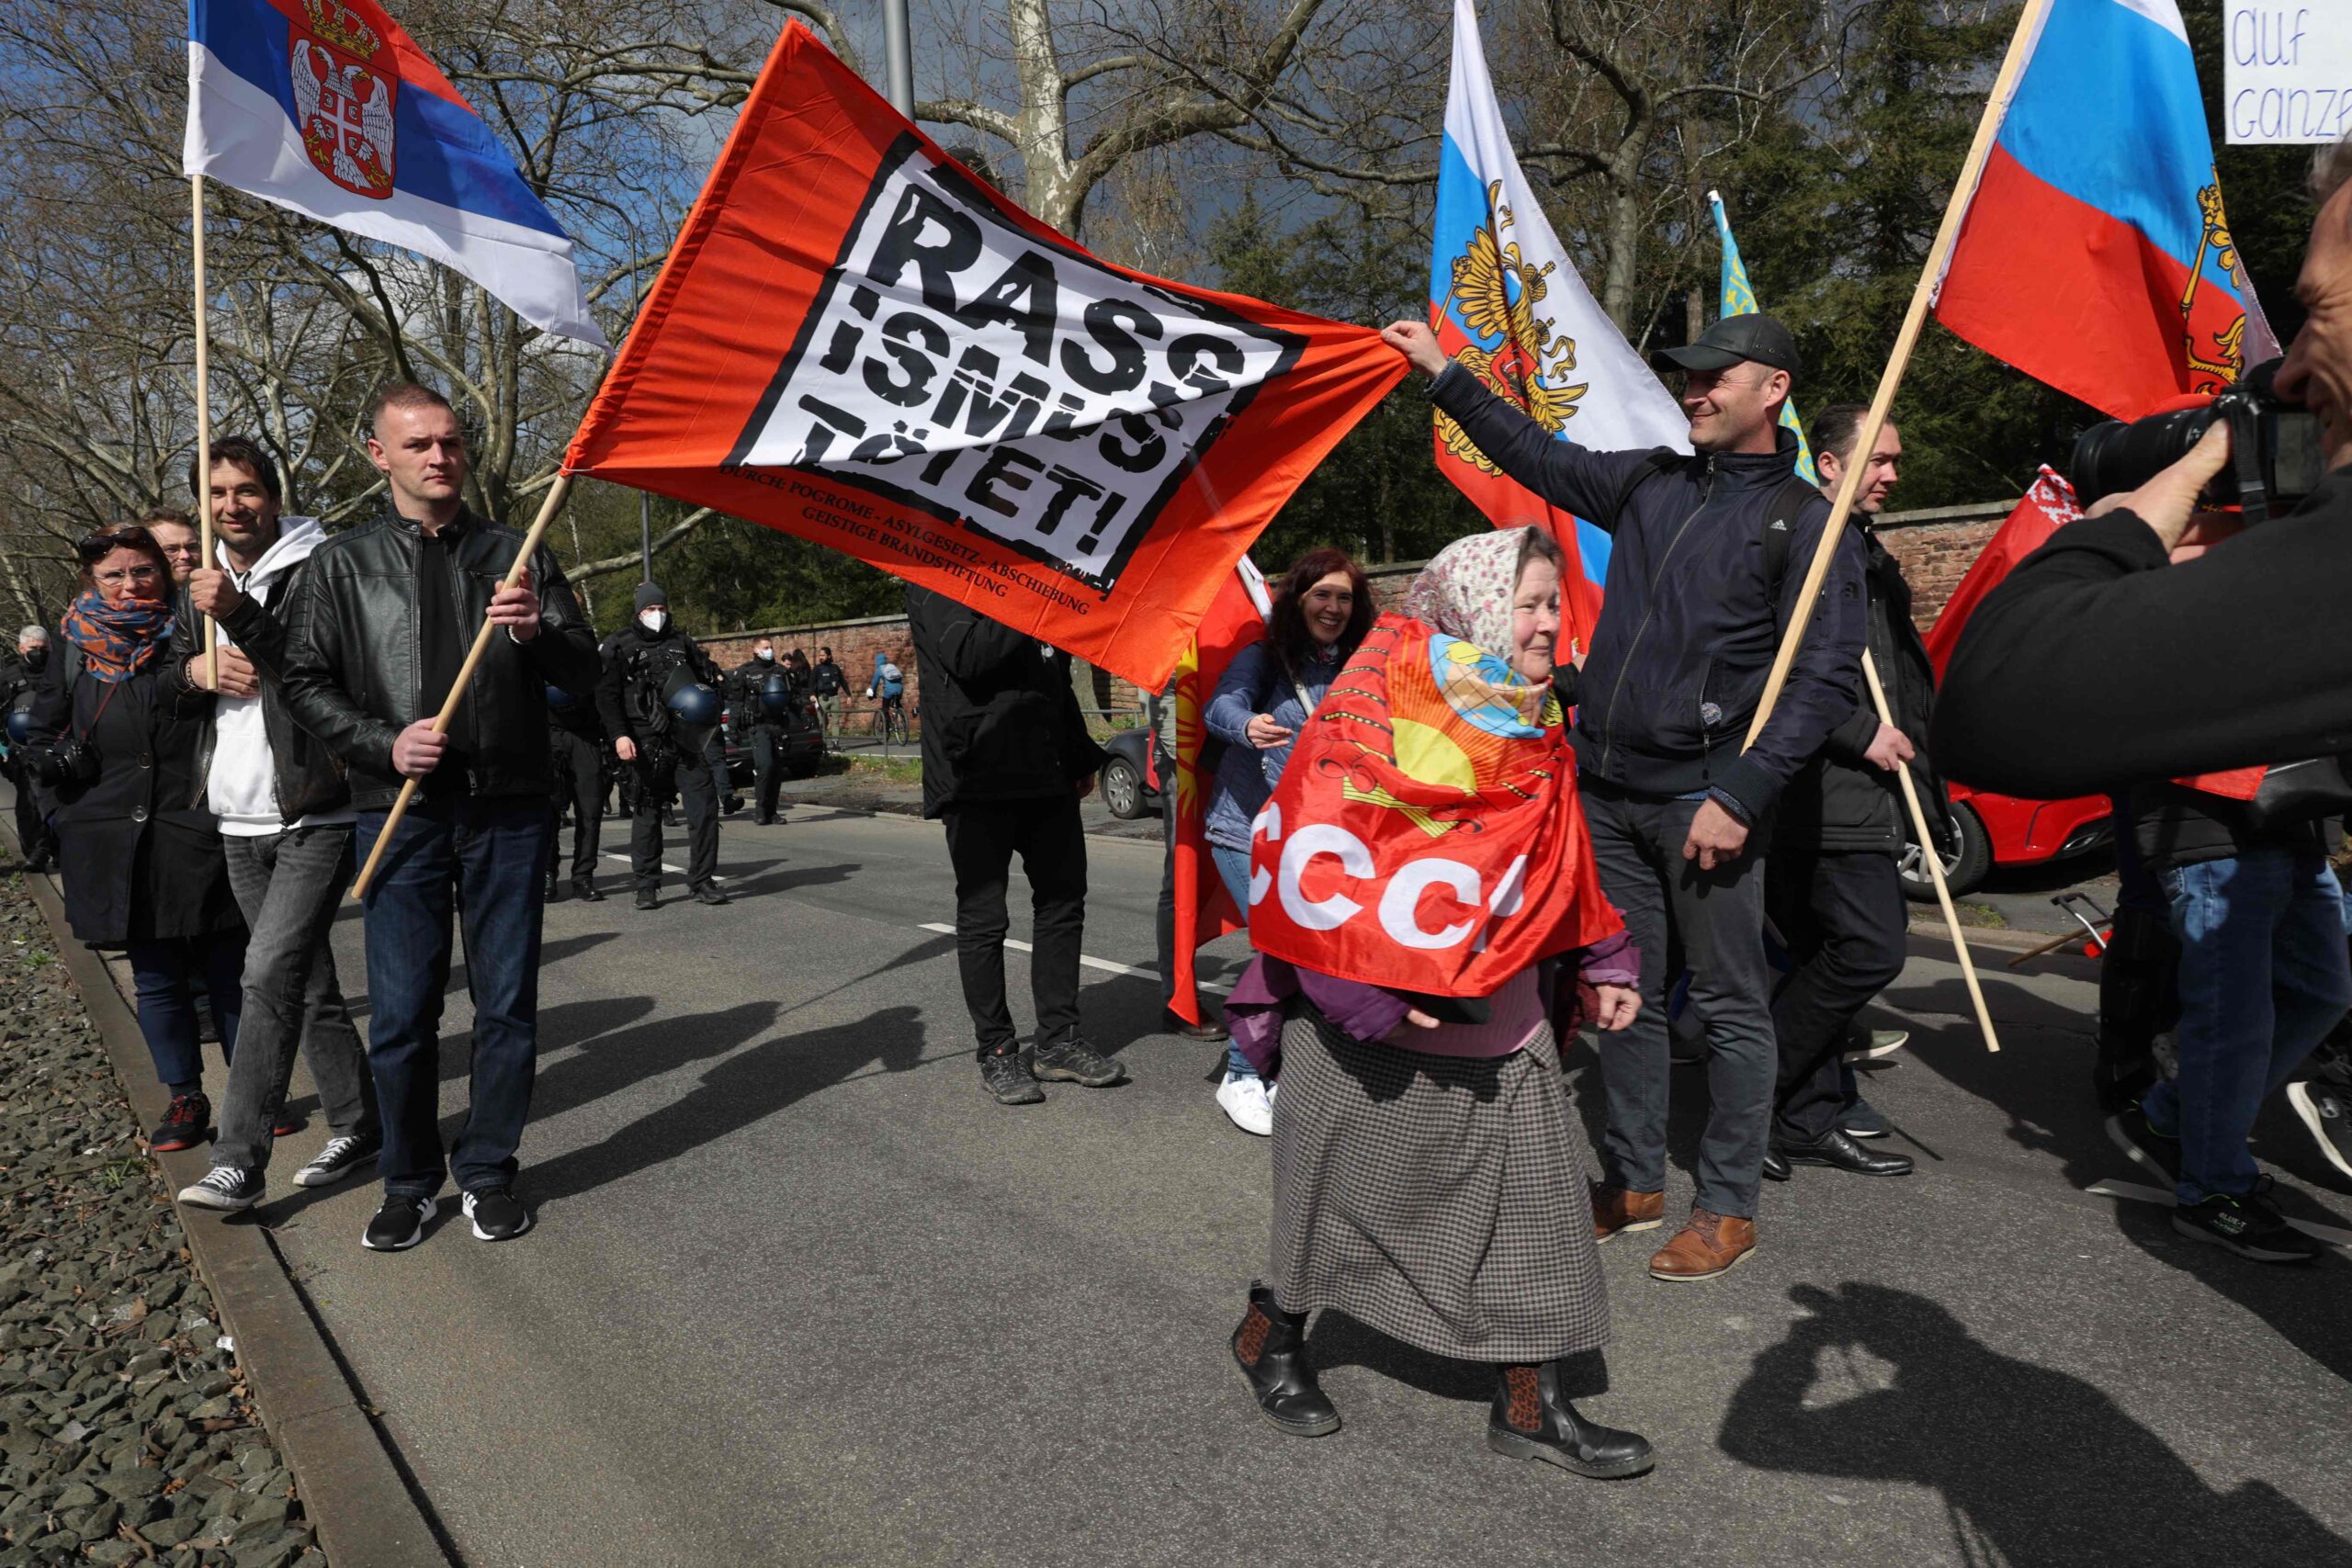 Пророссийская акция протеста во Франкфурте-на-Майне. Германия.  10 апреля 2022 года. Фото Yann Schreiber/AFP/Scanpix/LETA  